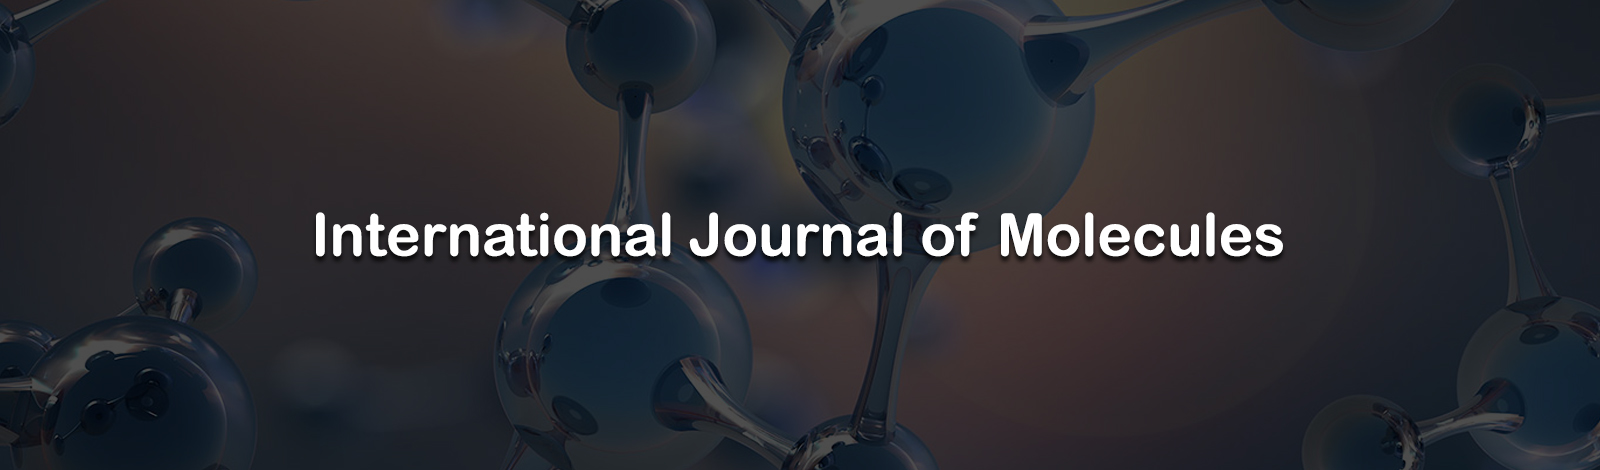 International Journal of Molecules